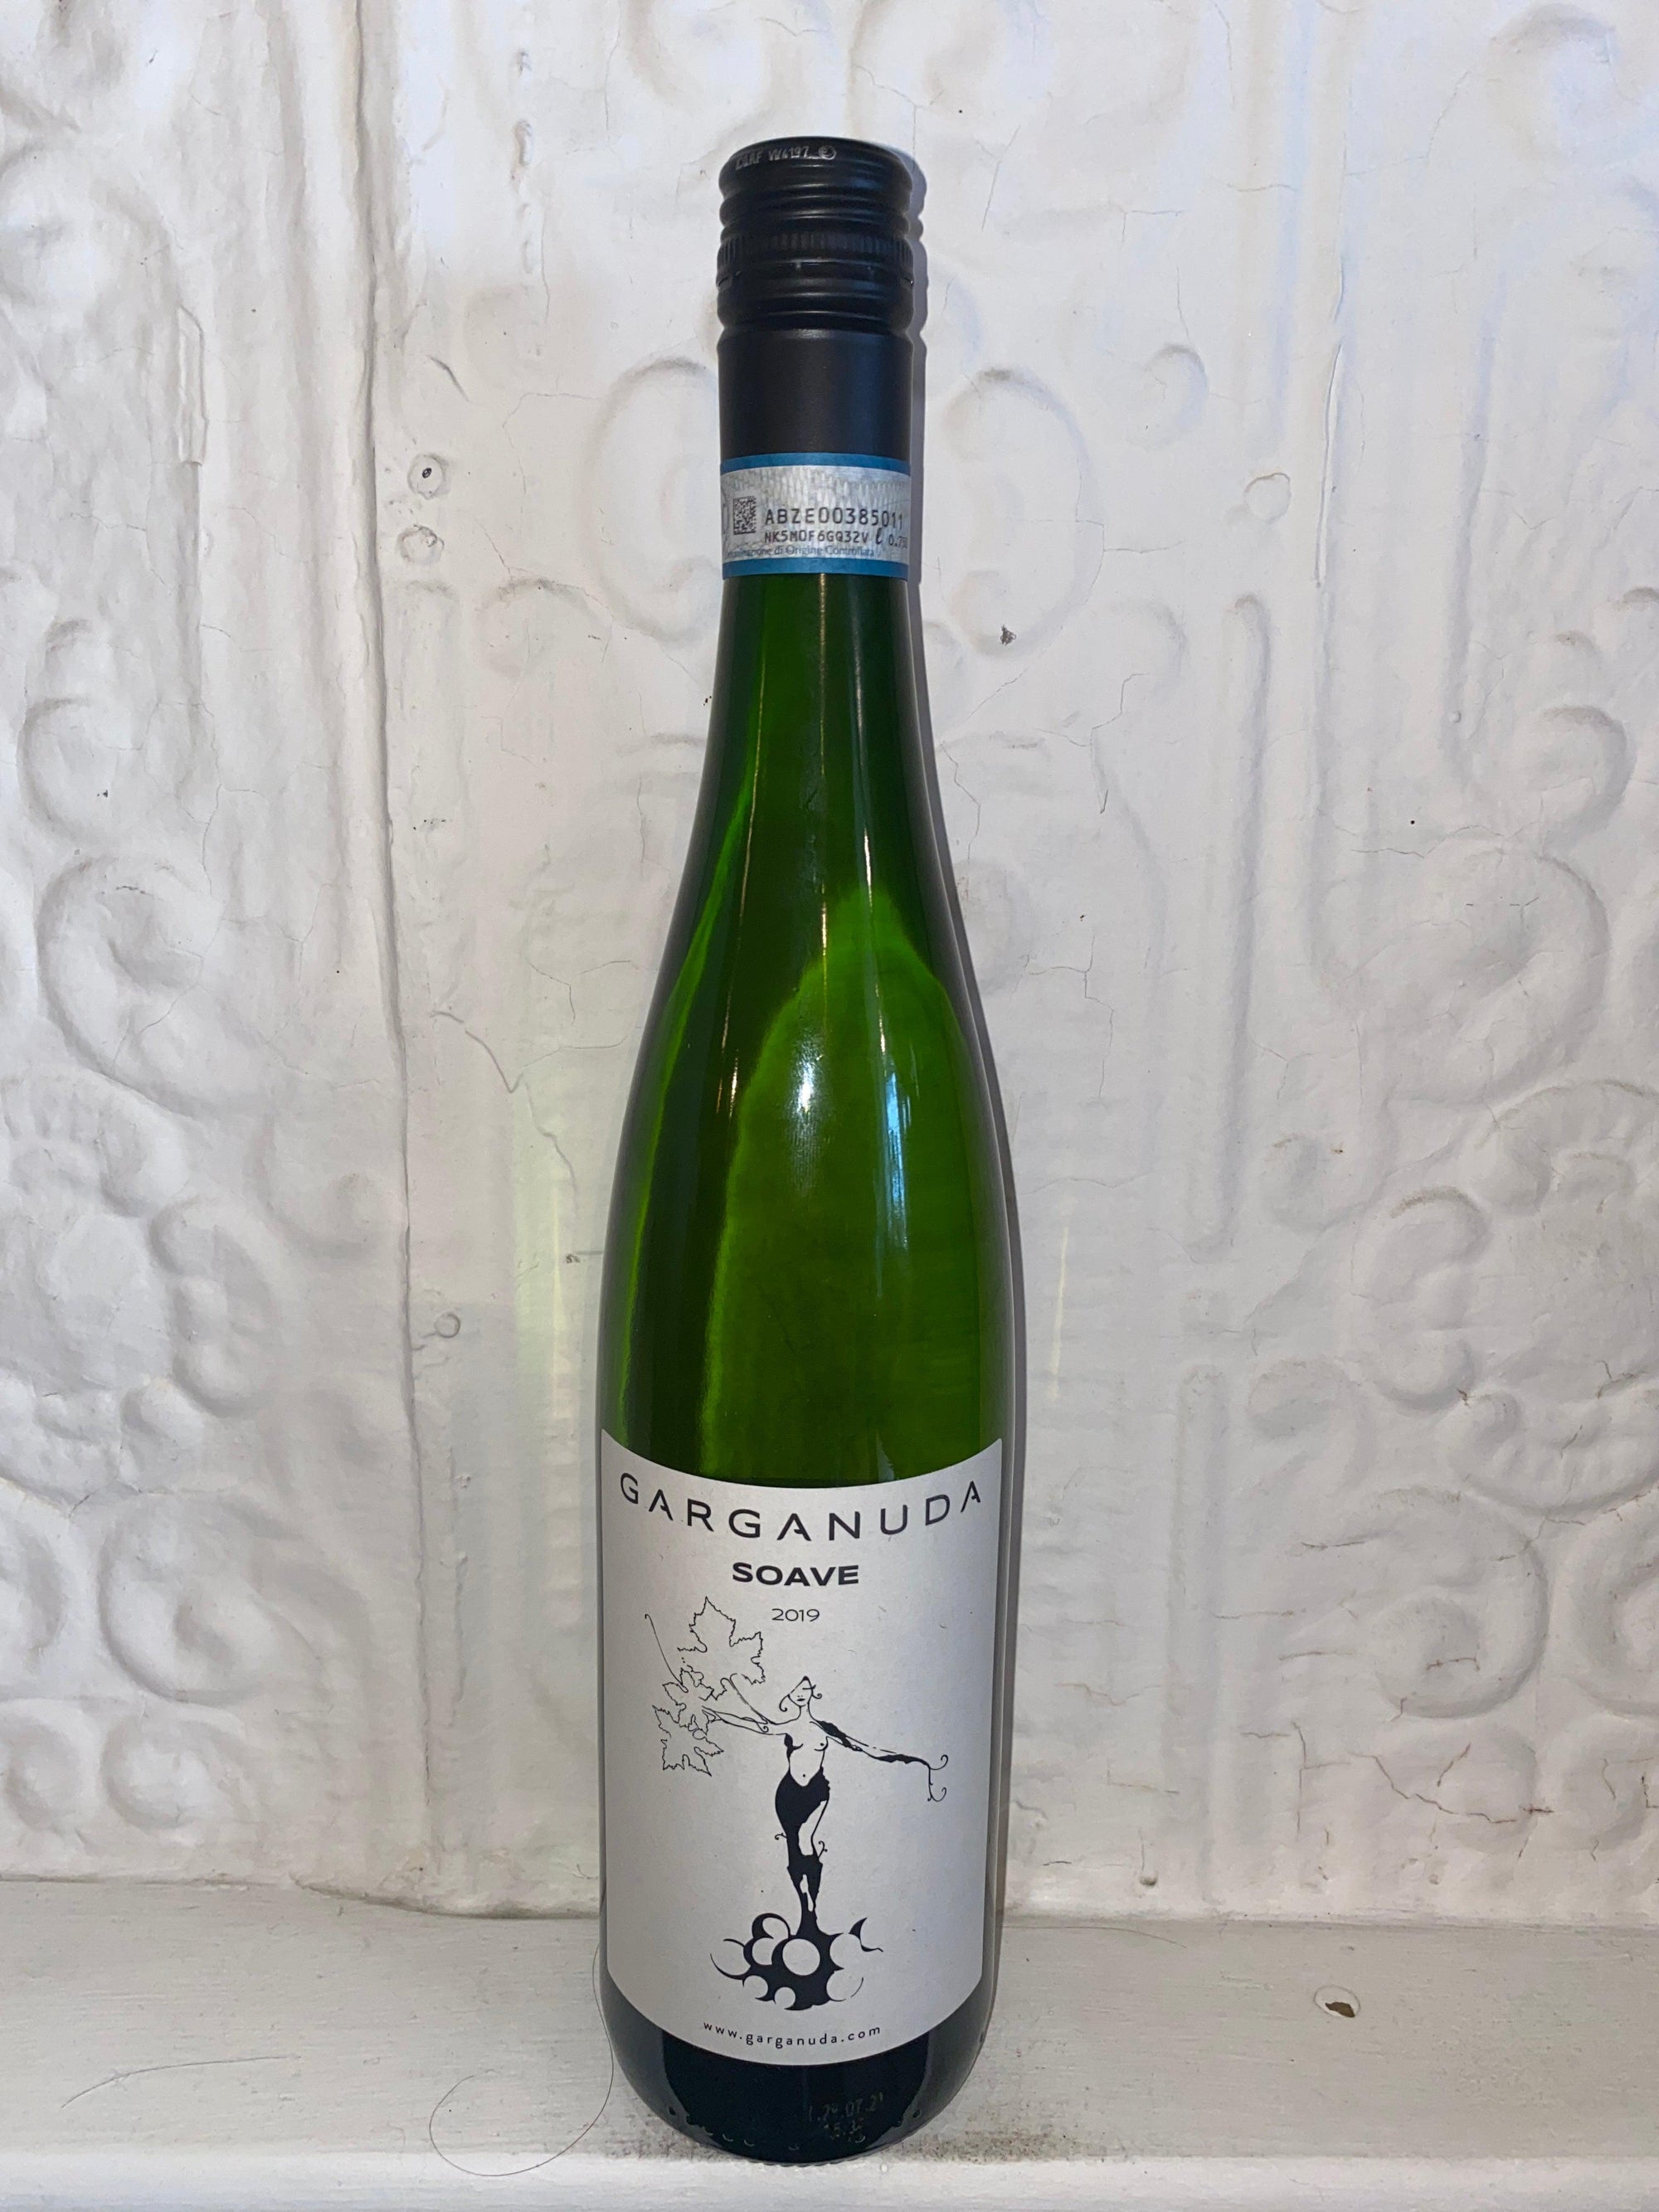 Soave Garganuda, Giovanni Menti 2019 (Veneto, Italy)-Wine-Bibber & Bell